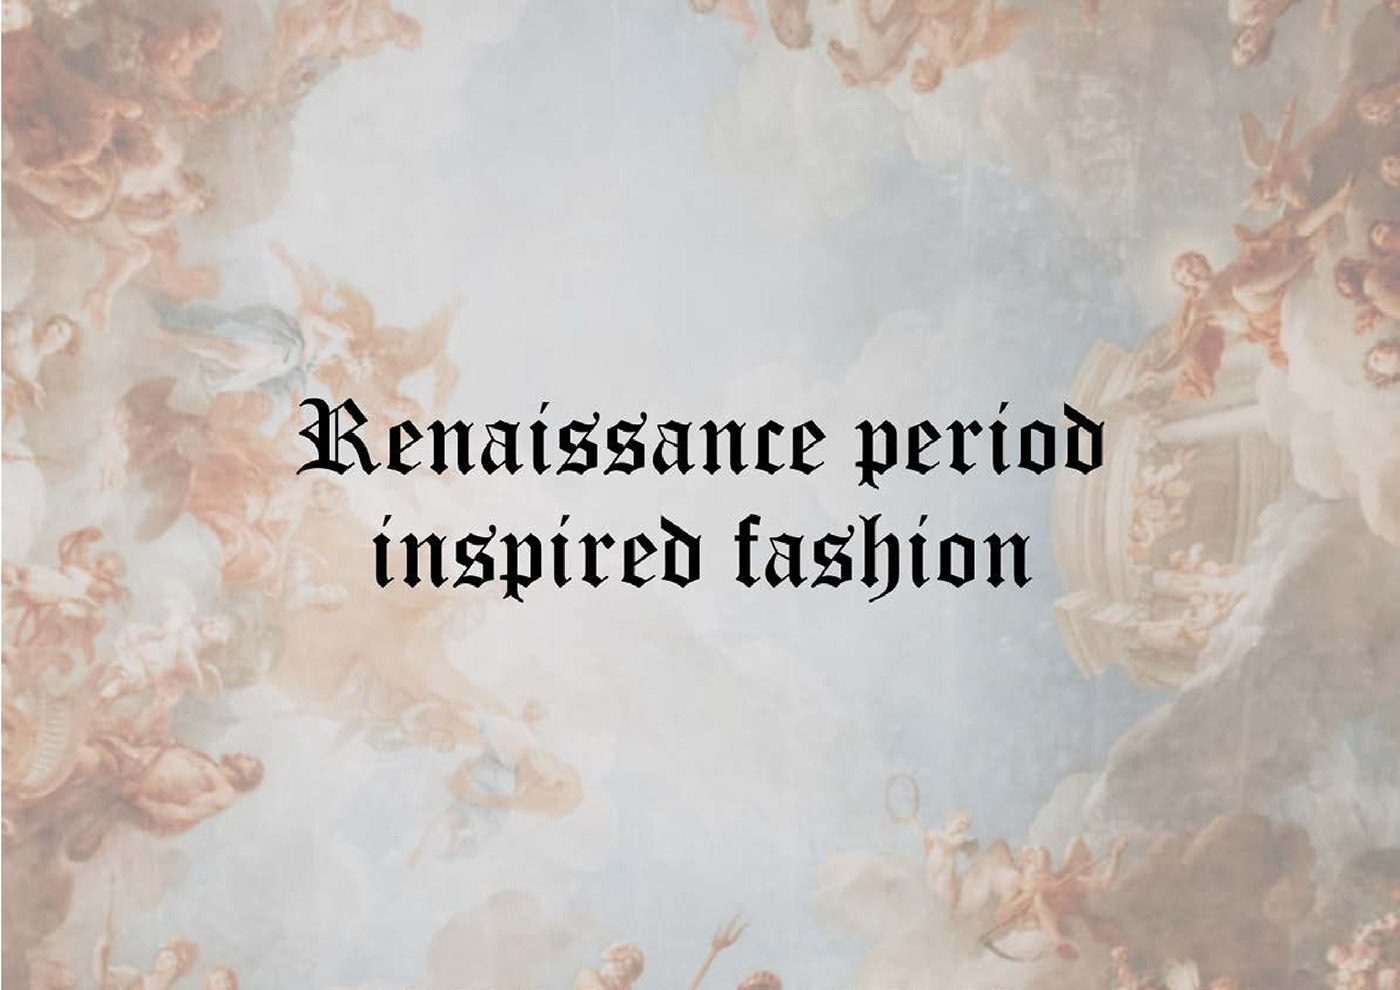 fashion design history of fashion fashion history history